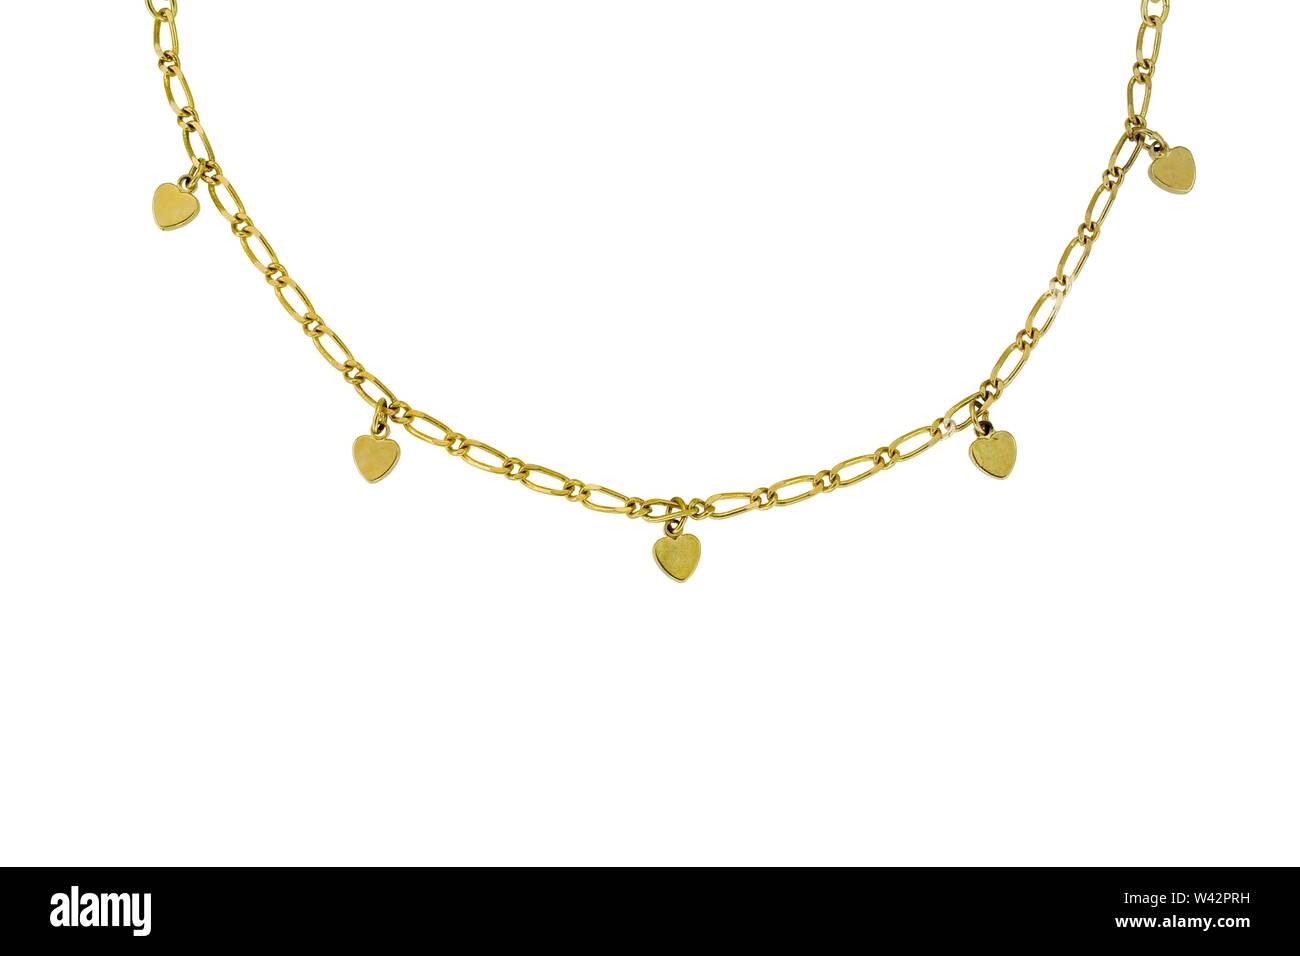 Ce collier de chaîne d'or jaune est en fil métallique rond et ovale et liens a coeur charms se balançant d'elle. Le collier est constitué d'une demi-ronde Banque D'Images